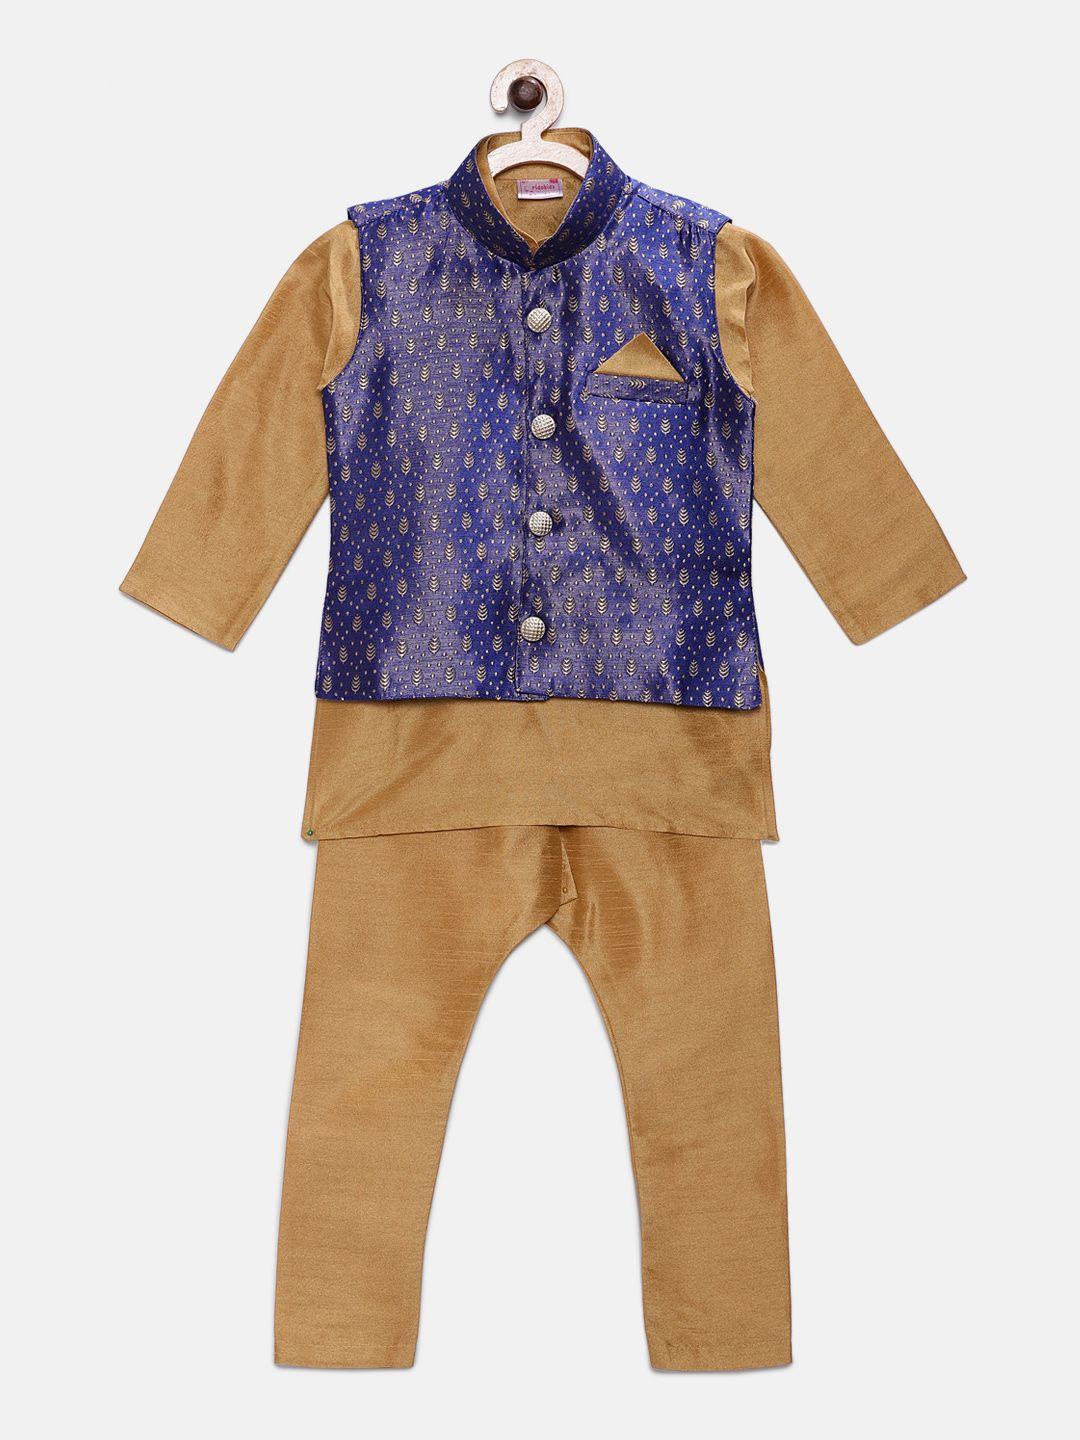 ridokidz boys mustard solid kurta with pyjamas & nehru jacket